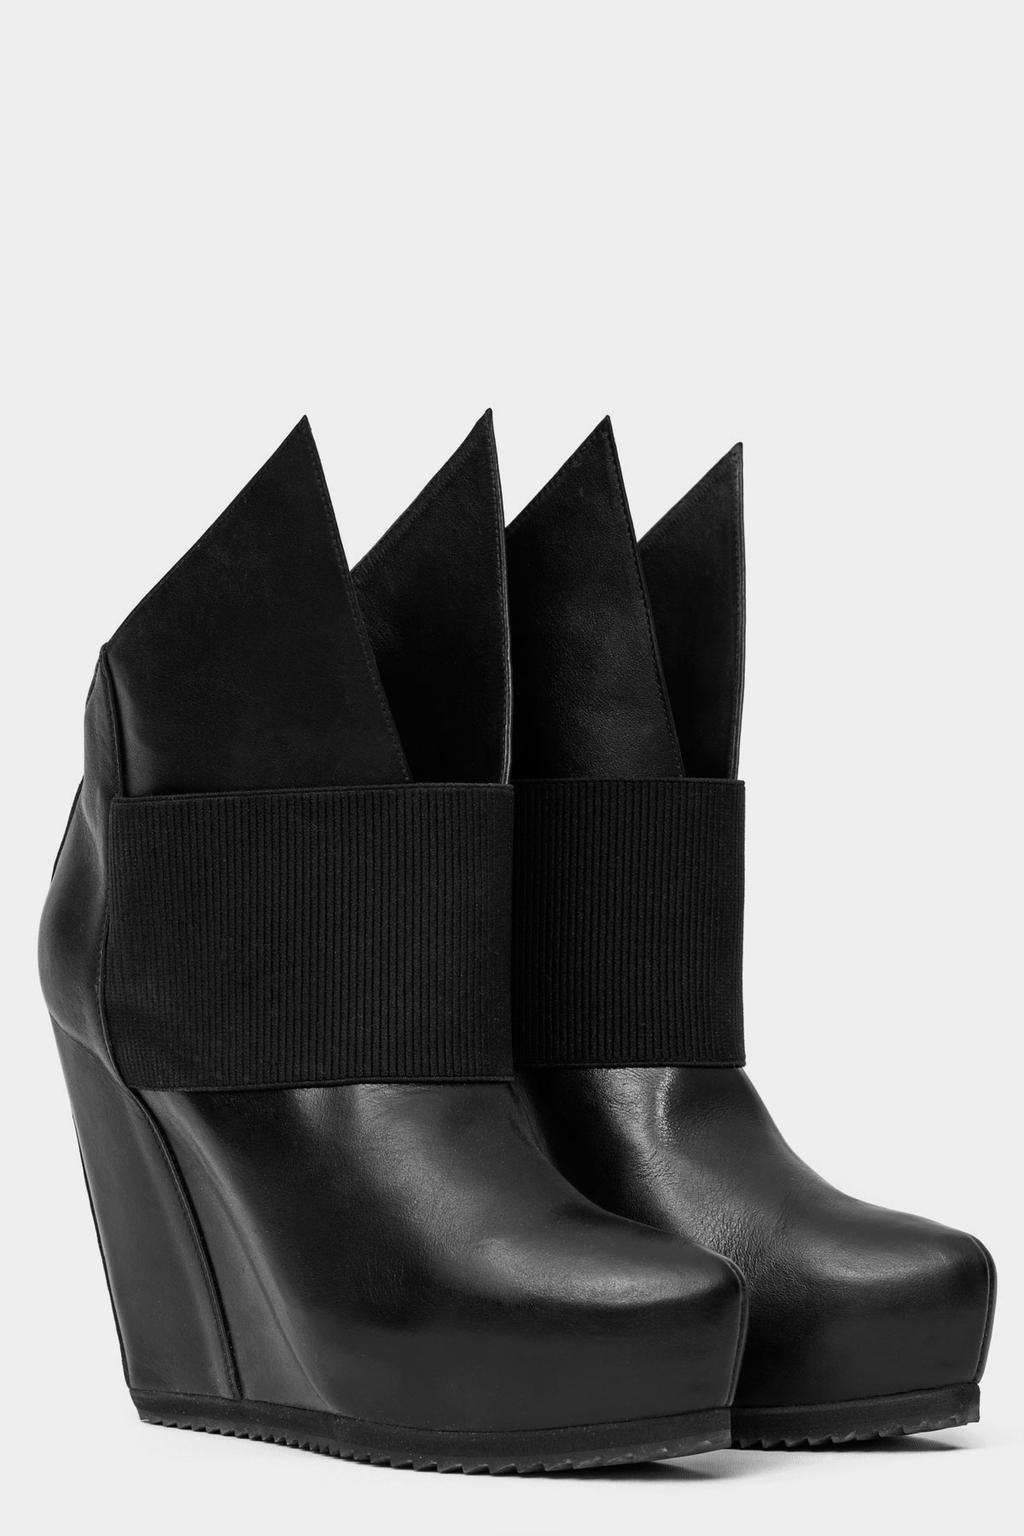 Atelier Odeur Studios A /W 16 OA 07-1 Splinth Wedge High heel wedge in genuine black leather in graphic cut. Height of heel is 12,5 cm.